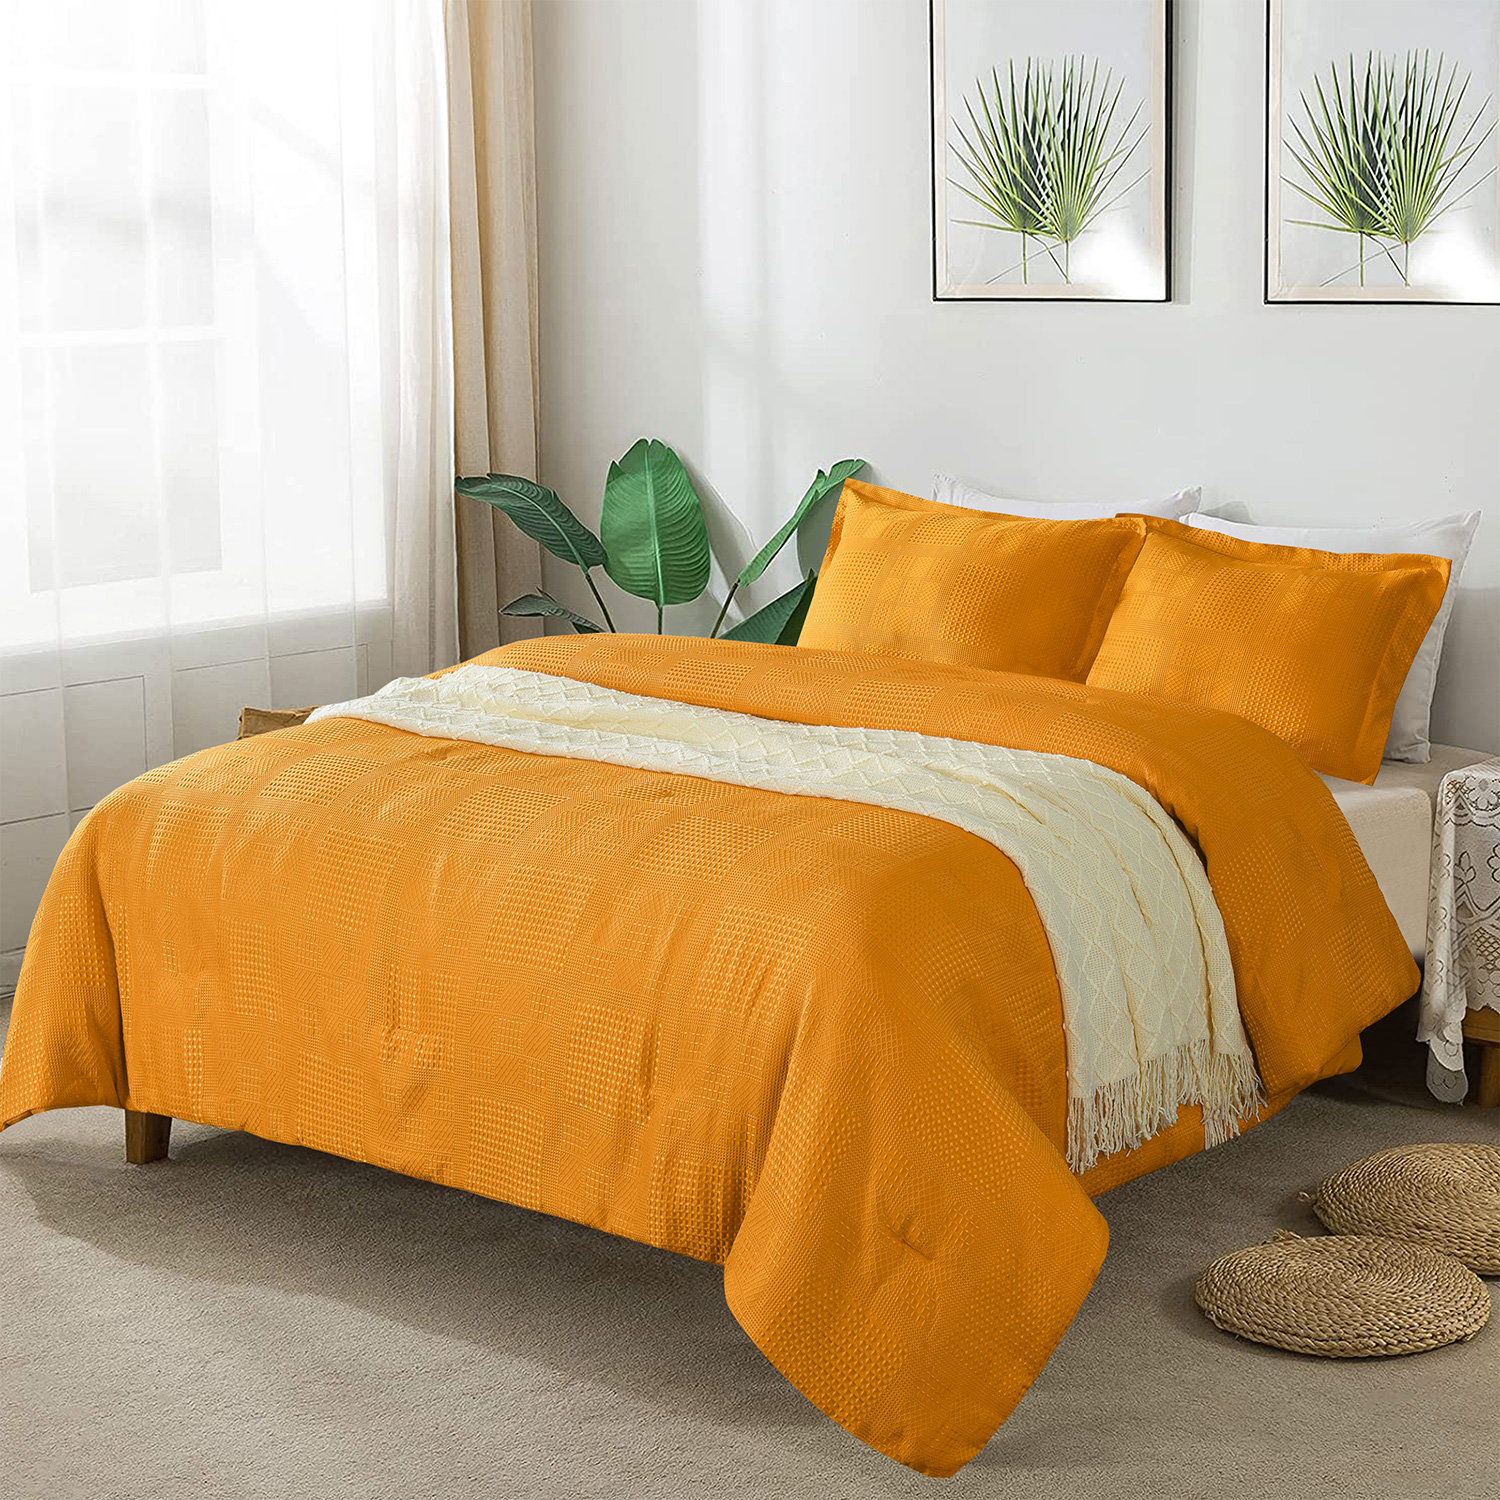 3-ply linen (30 colors) — Weaver House